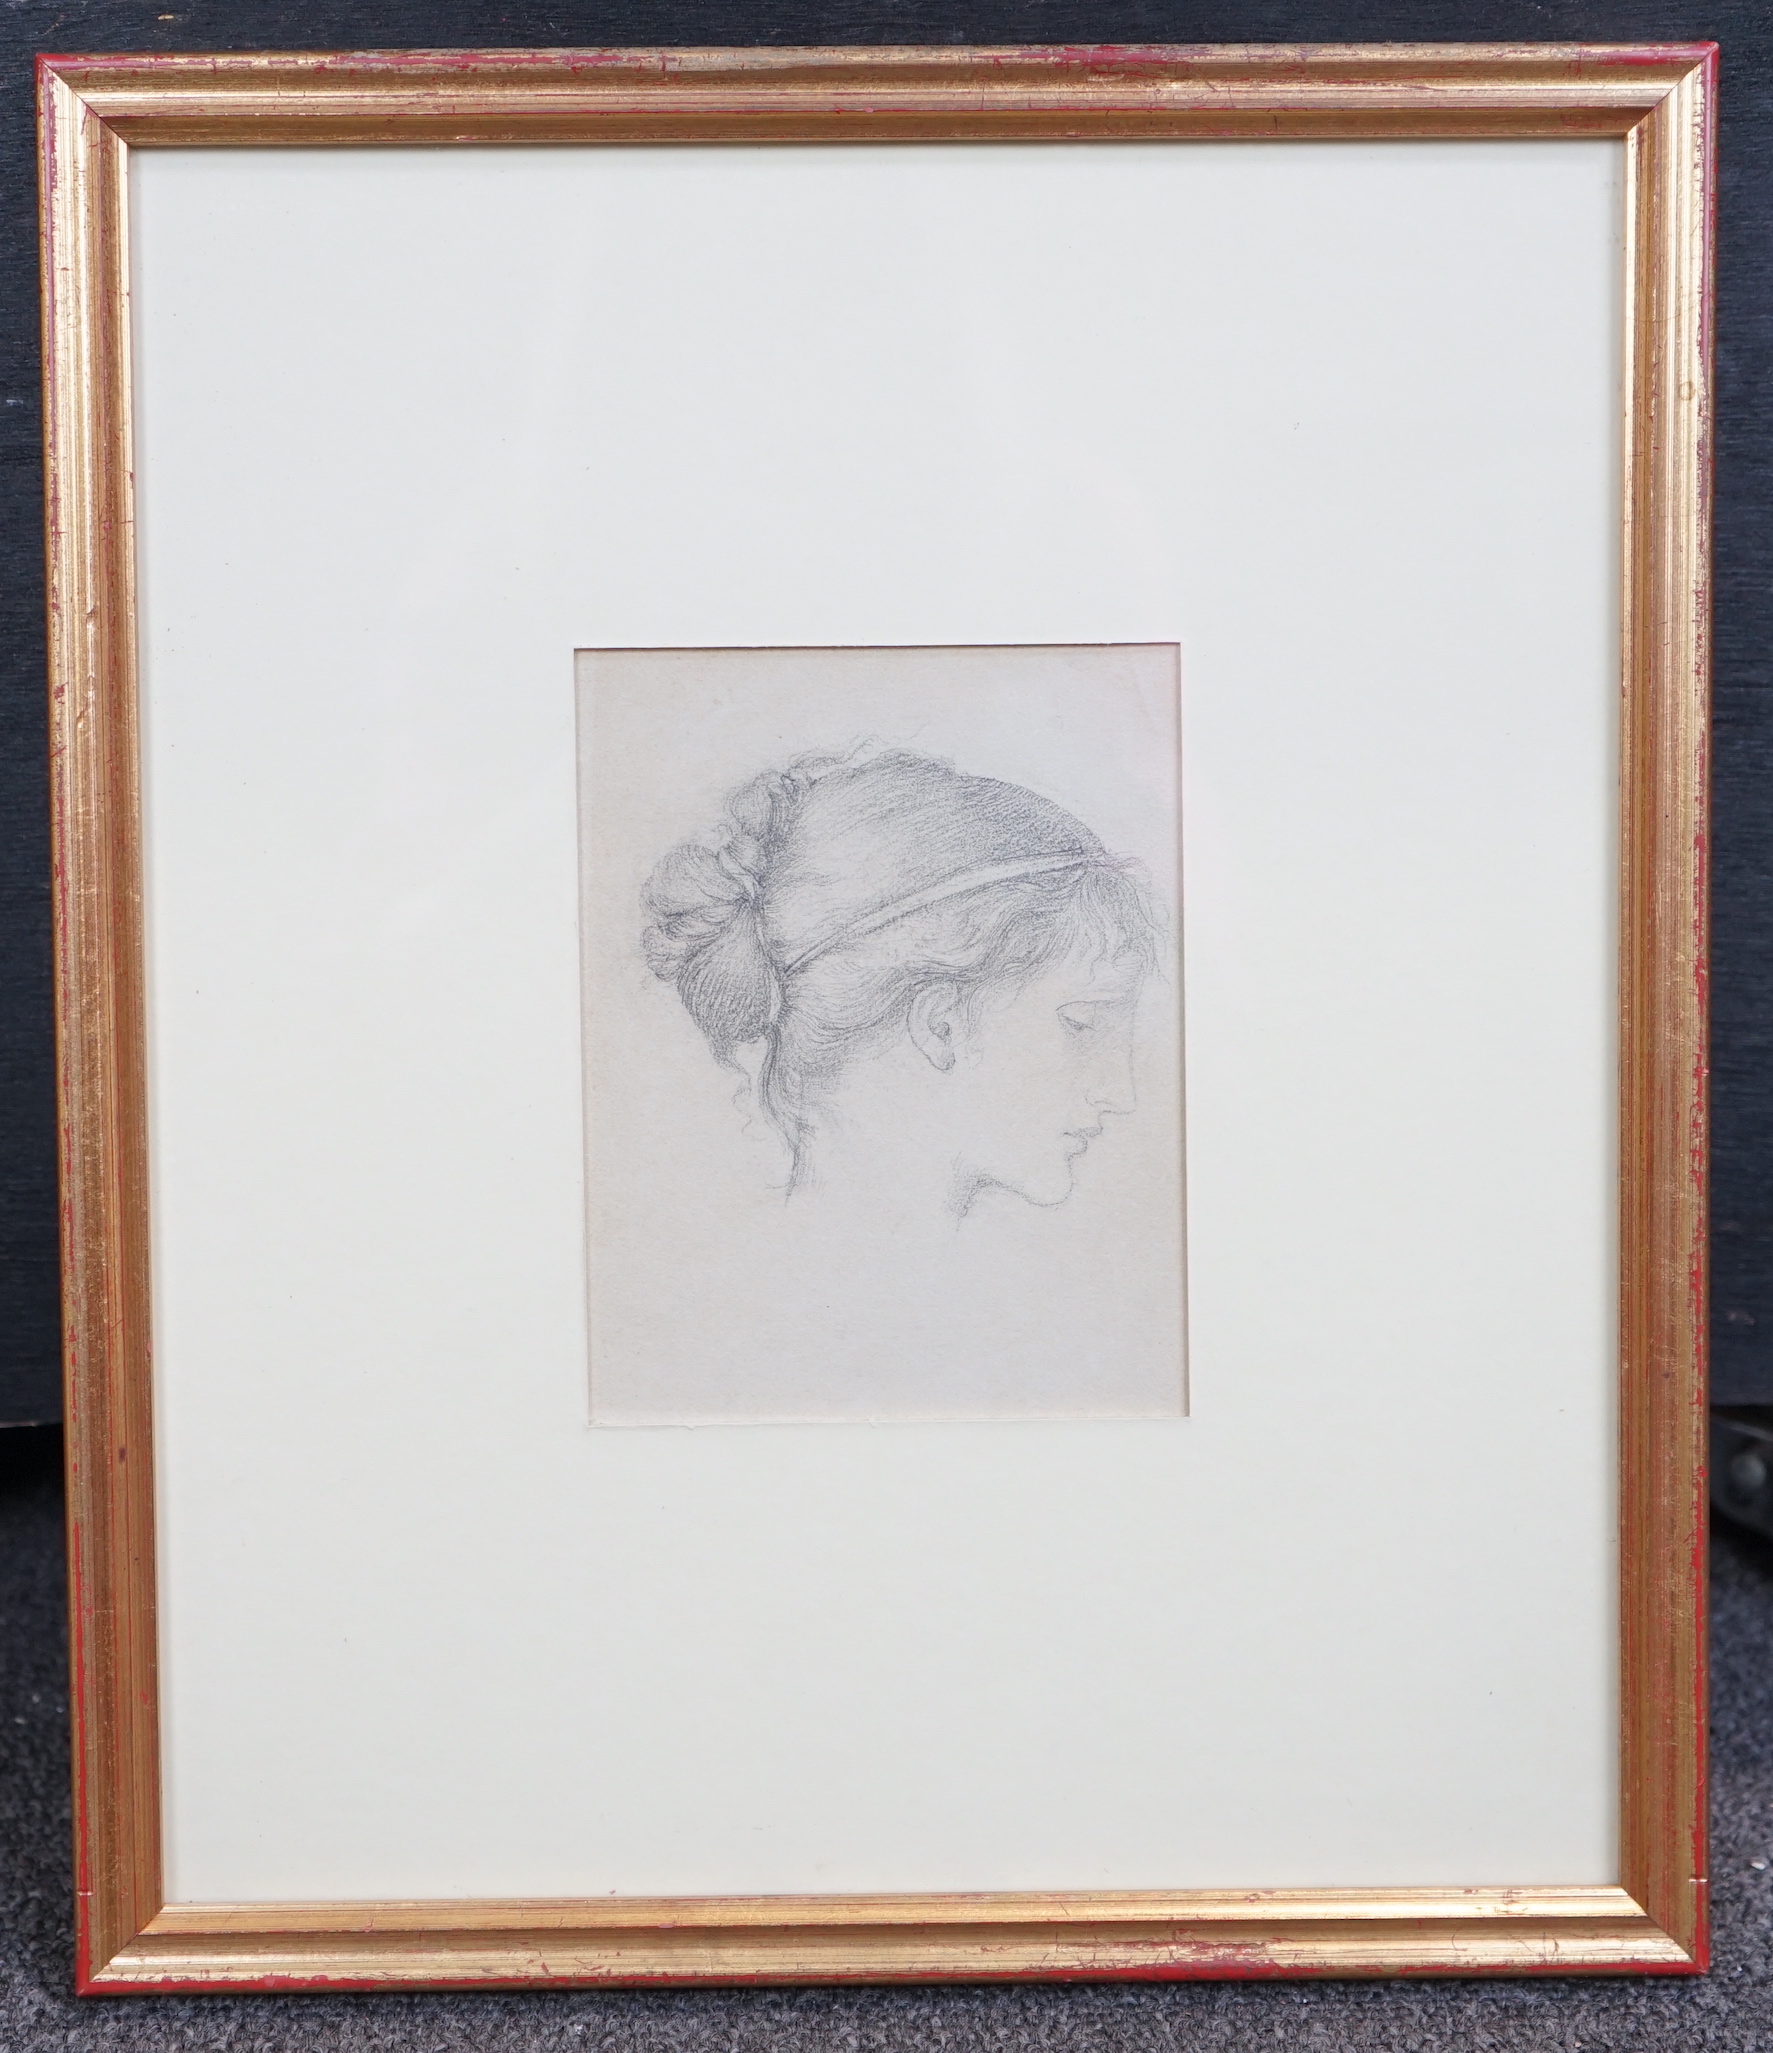 Sir Edward Coley Burne-Jones, Bt; A.R.A; R.W.S. (British, 1883-1898), Head of a girl, possibly Maria Zambaco, pencil on paper, 13.5 x 10.5cm